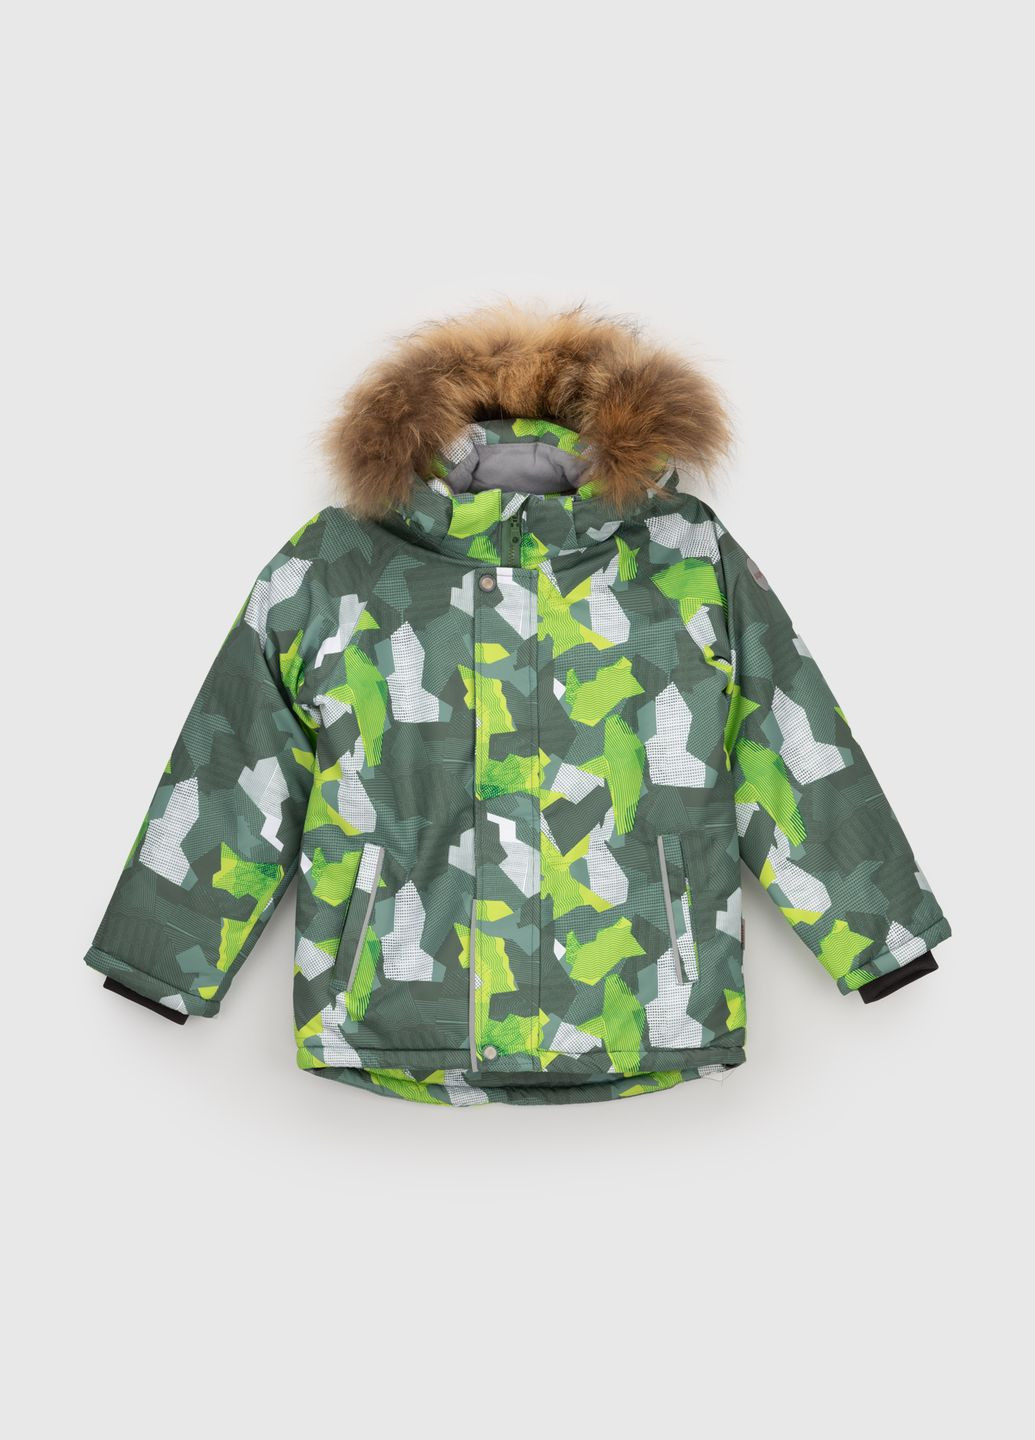 Зелена зимня куртка Snowgenius